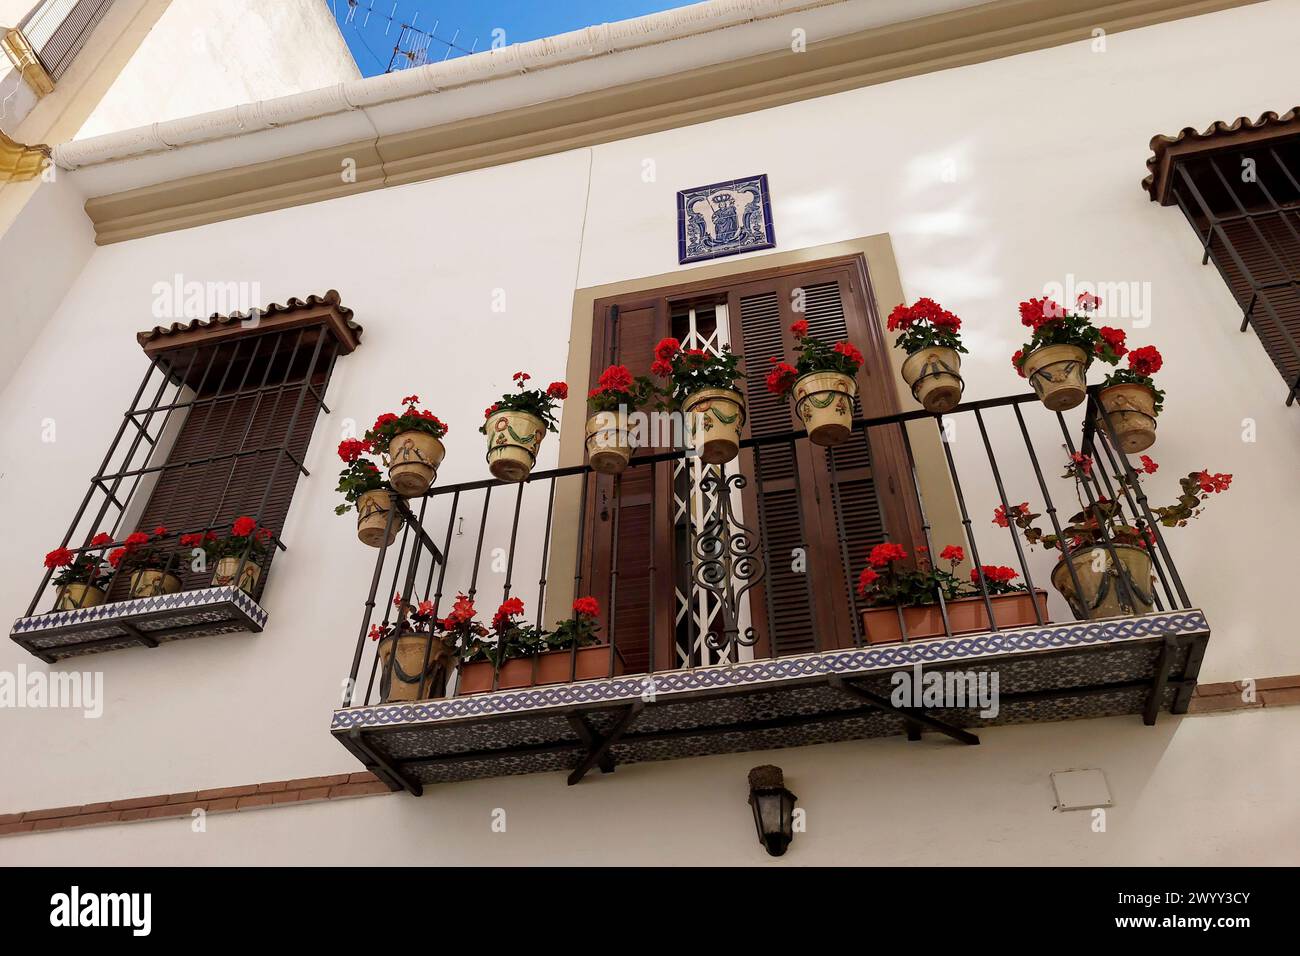 Balcon décoré de géraniums à fleurs rouges en pots. Málaga, Espagne. Banque D'Images